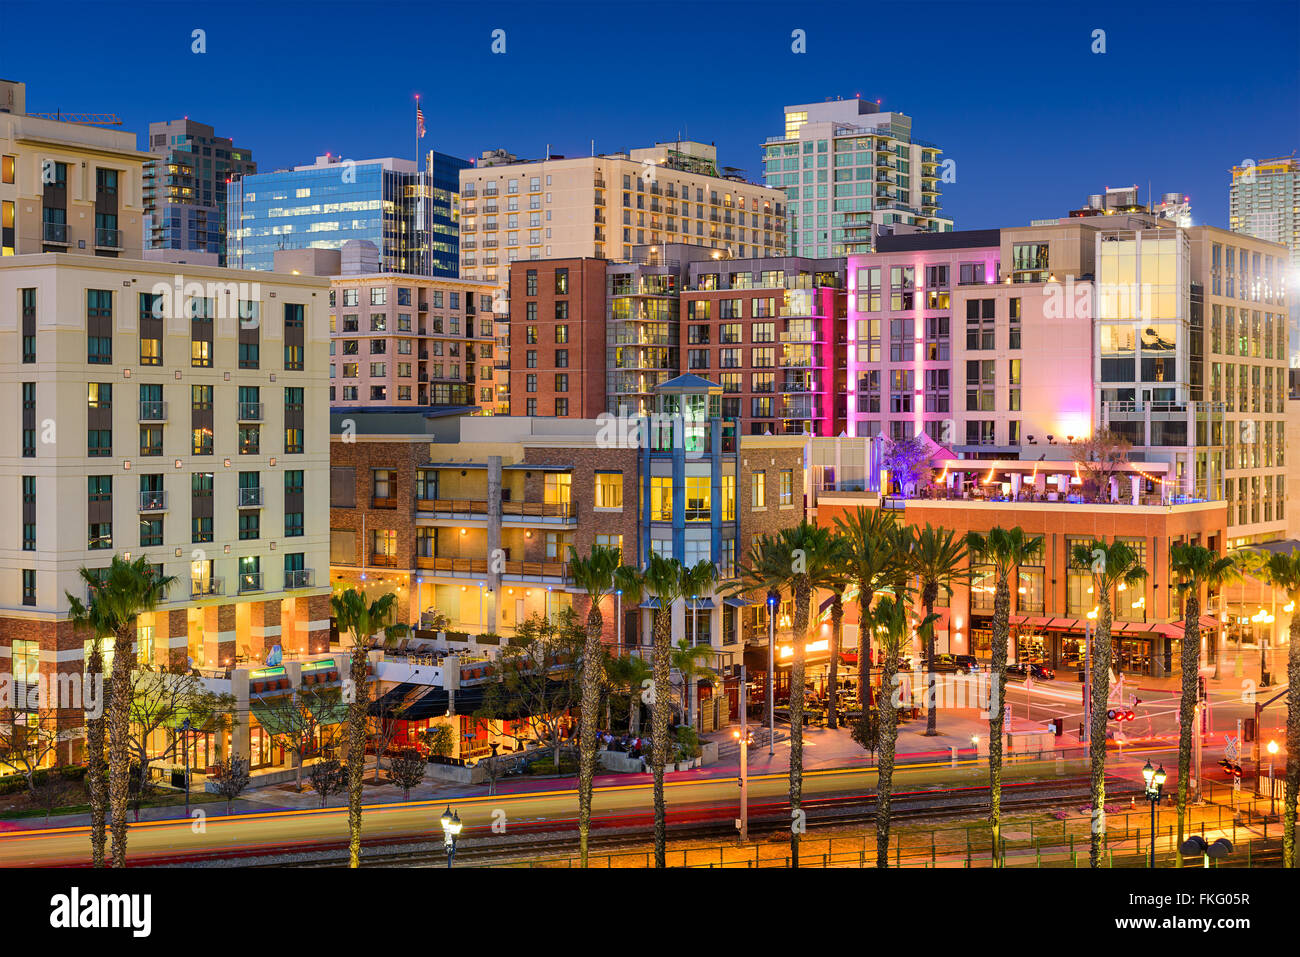 Ciudad de San Diego, California, en el distrito de Gaslamp. Foto de stock